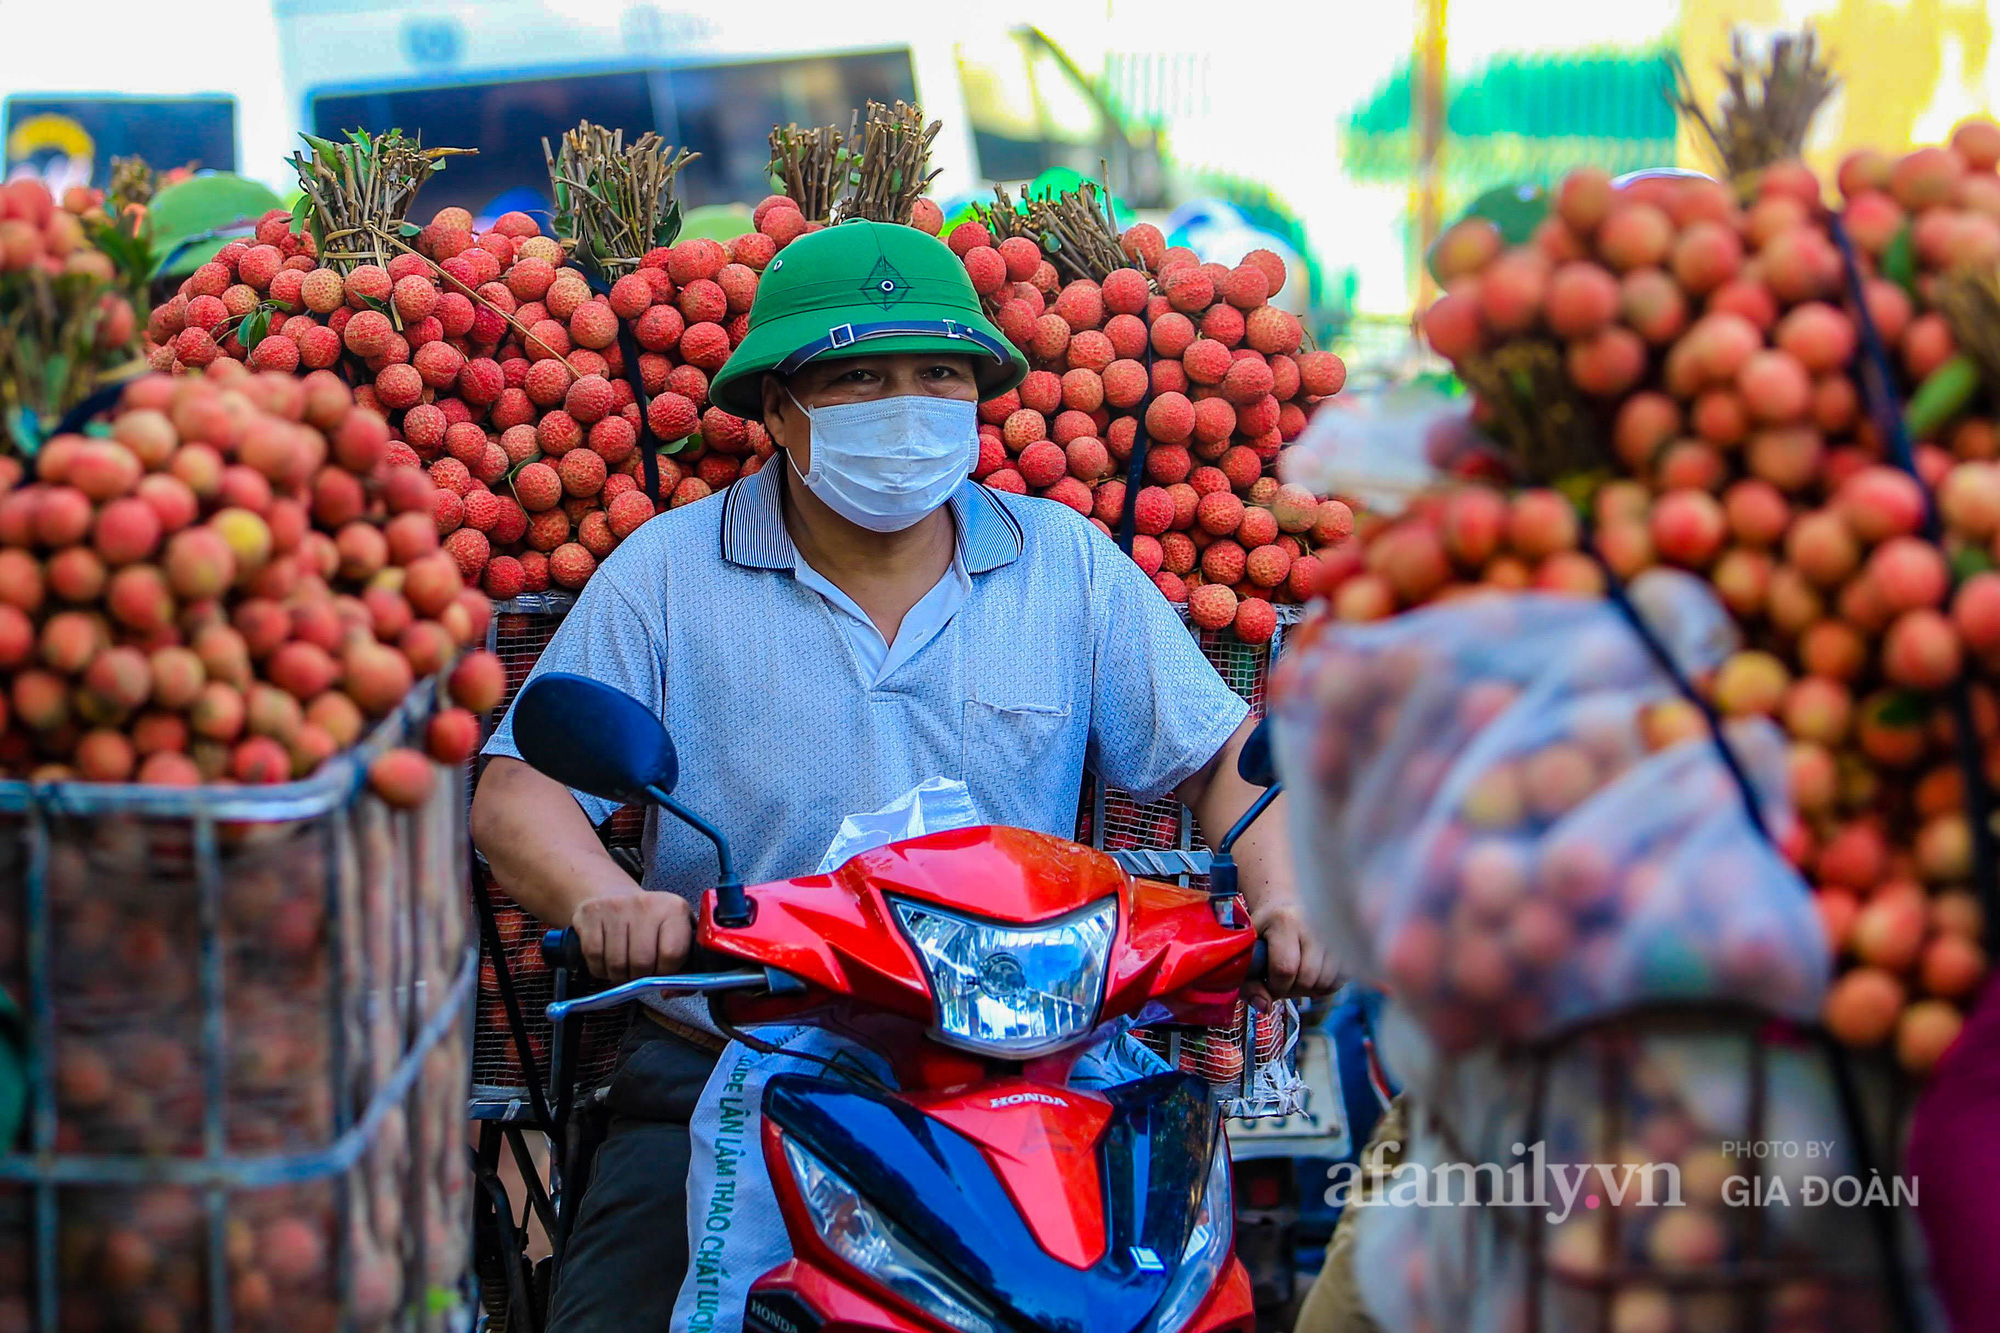 Chợ vải Bắc Giang nhộn nhịp vào mùa - Ảnh 14.